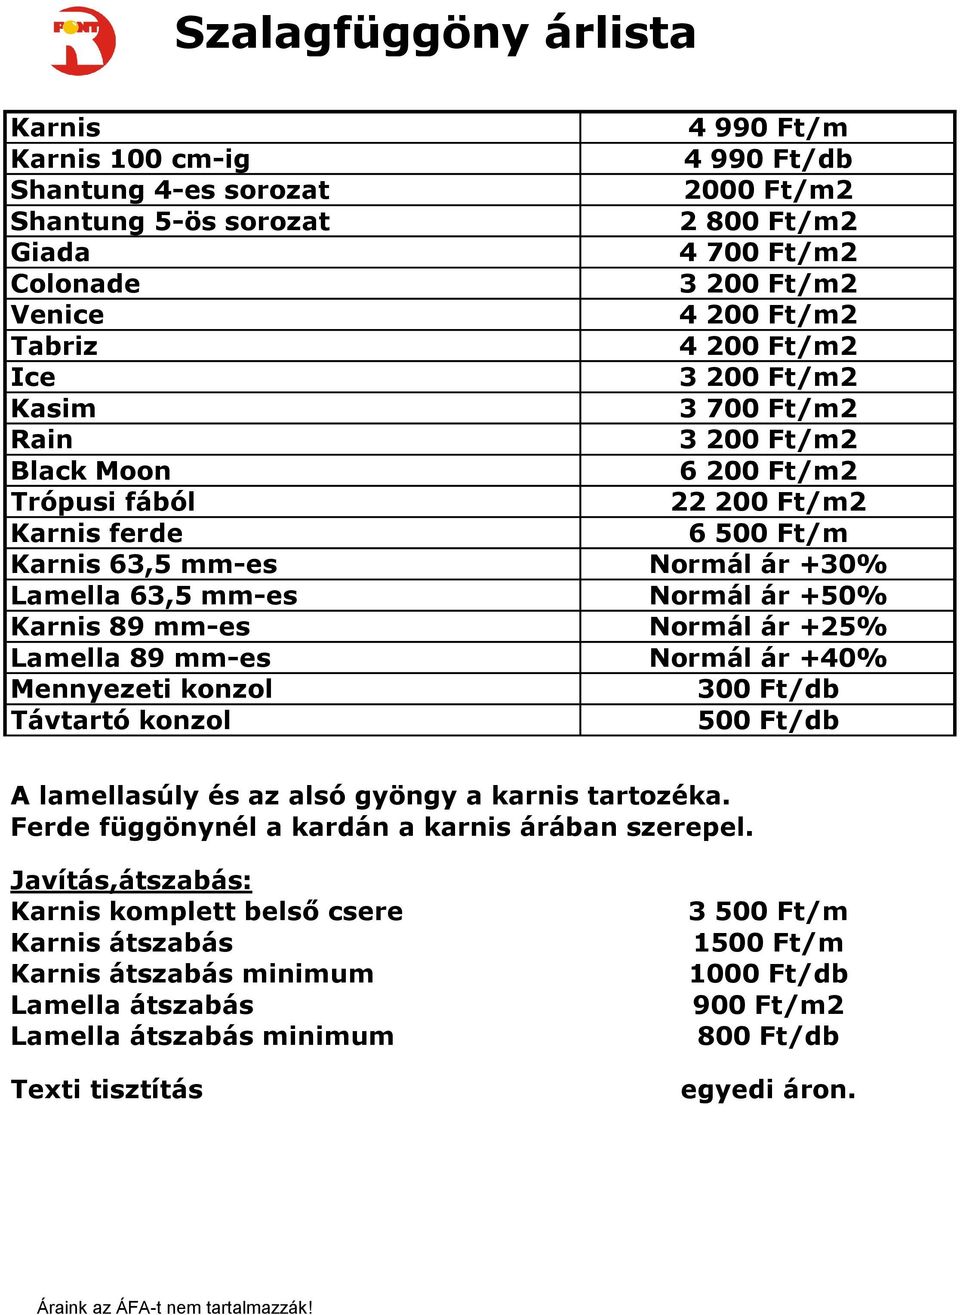 Normál ár +50% Karnis 89 mm-es Normál ár +25% Lamella 89 mm-es Normál ár +40% Mennyezeti konzol 300 Ft/db Távtartó konzol 500 Ft/db A lamellasúly és az alsó gyöngy a karnis tartozéka.